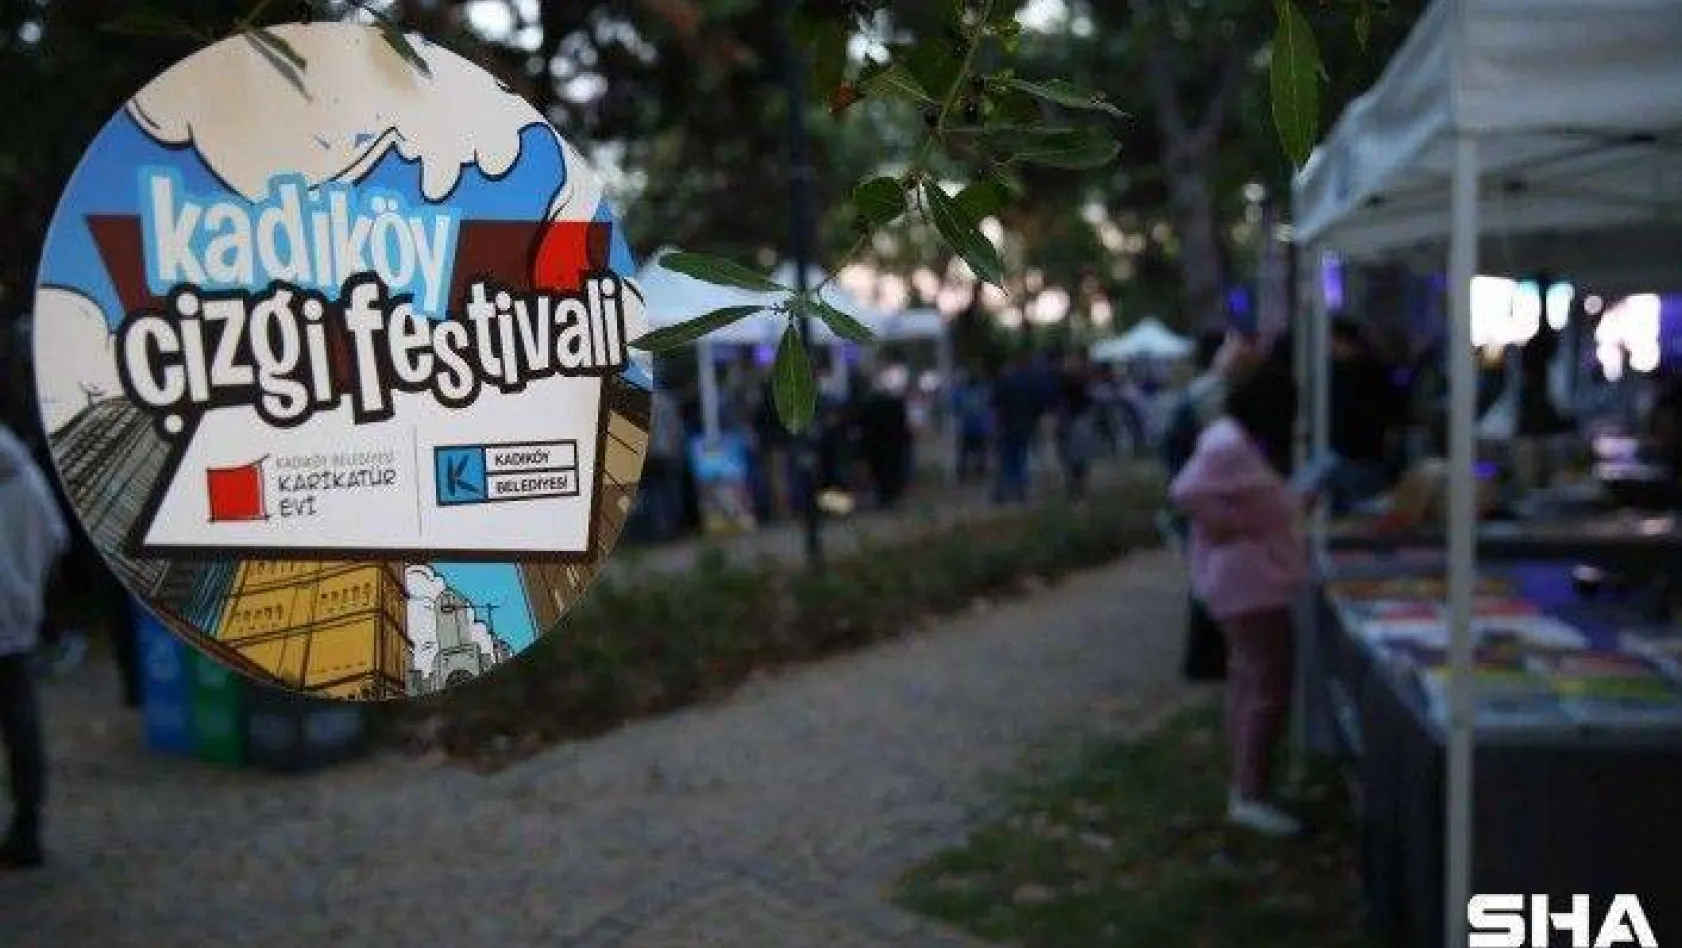 Kadıköy Çizgi Festivali ziyaretçilerine kapılarını açtı